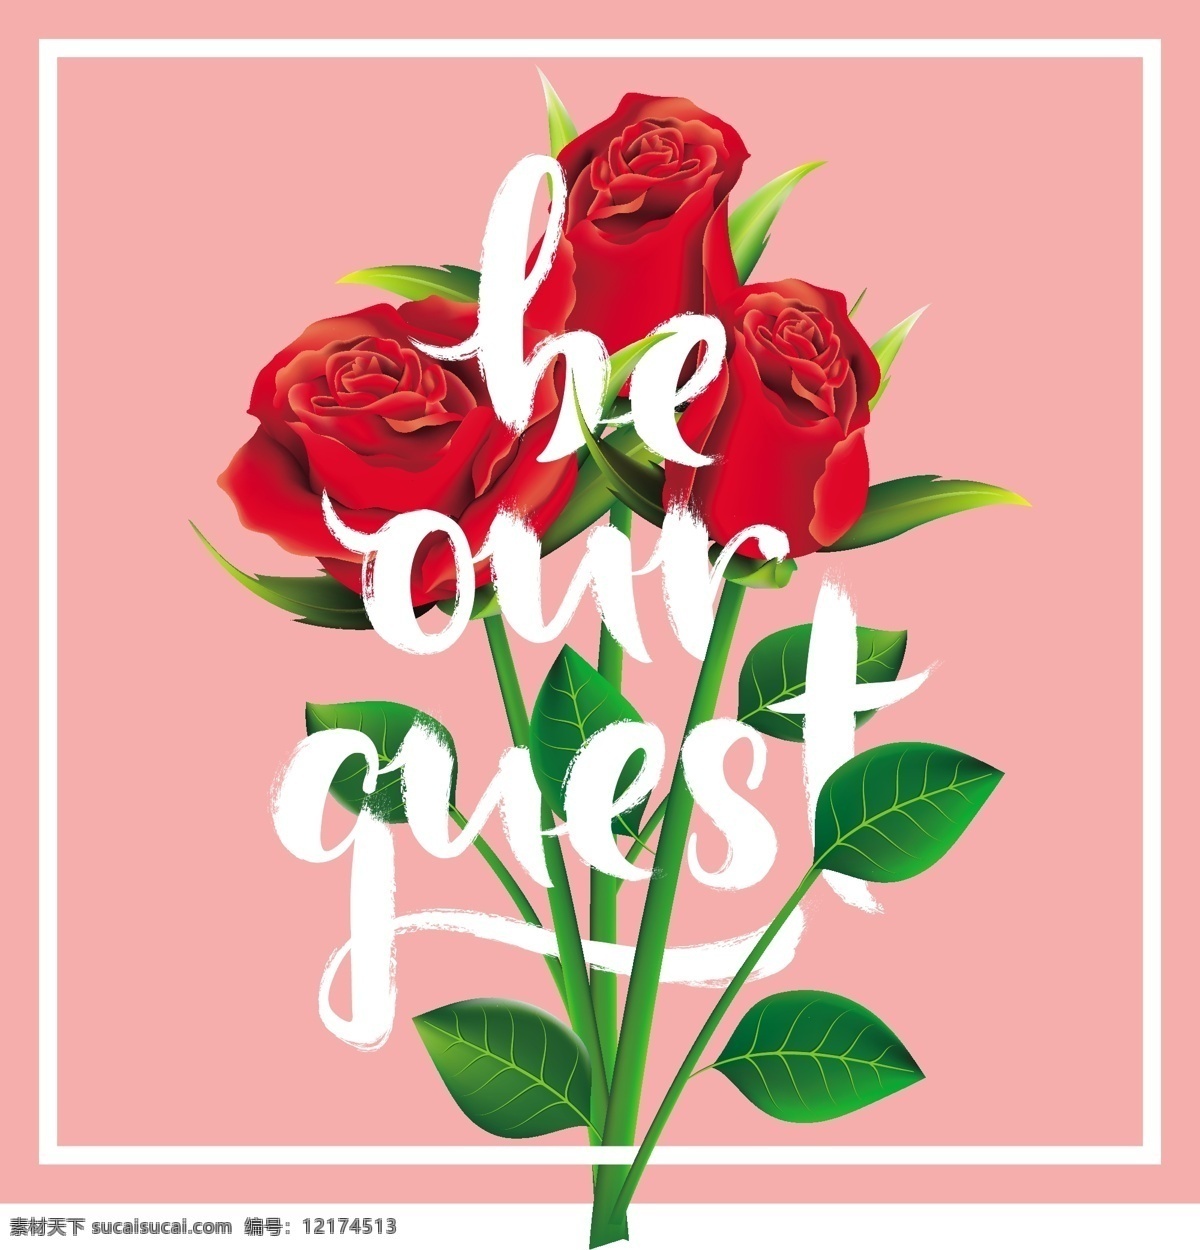 情人节 玫瑰花 装饰 贺卡 创意 节日 矢量素材 设计素材 背景素材